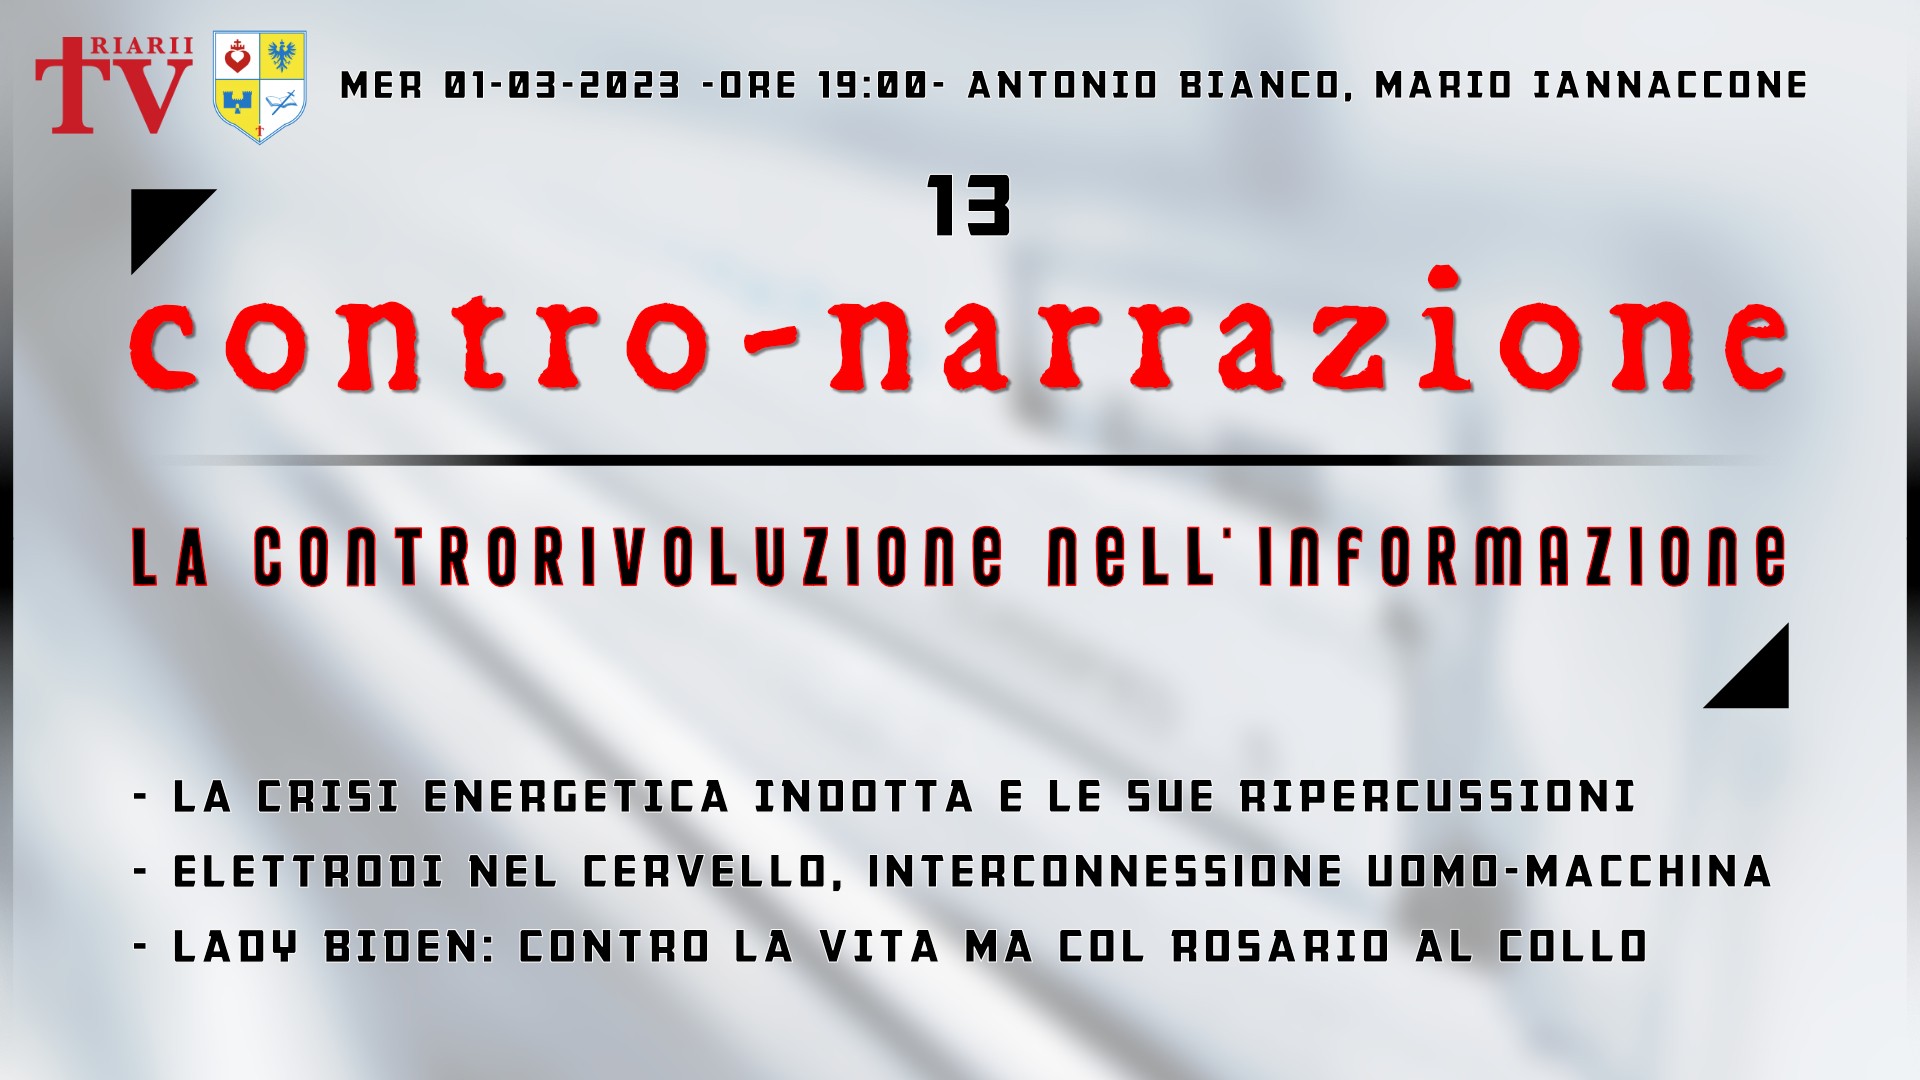 CONTRO-NARRAZIONE NR.13 - MER 1 MARZO 2023 - Antonio Bianco, Mario Iannaccone